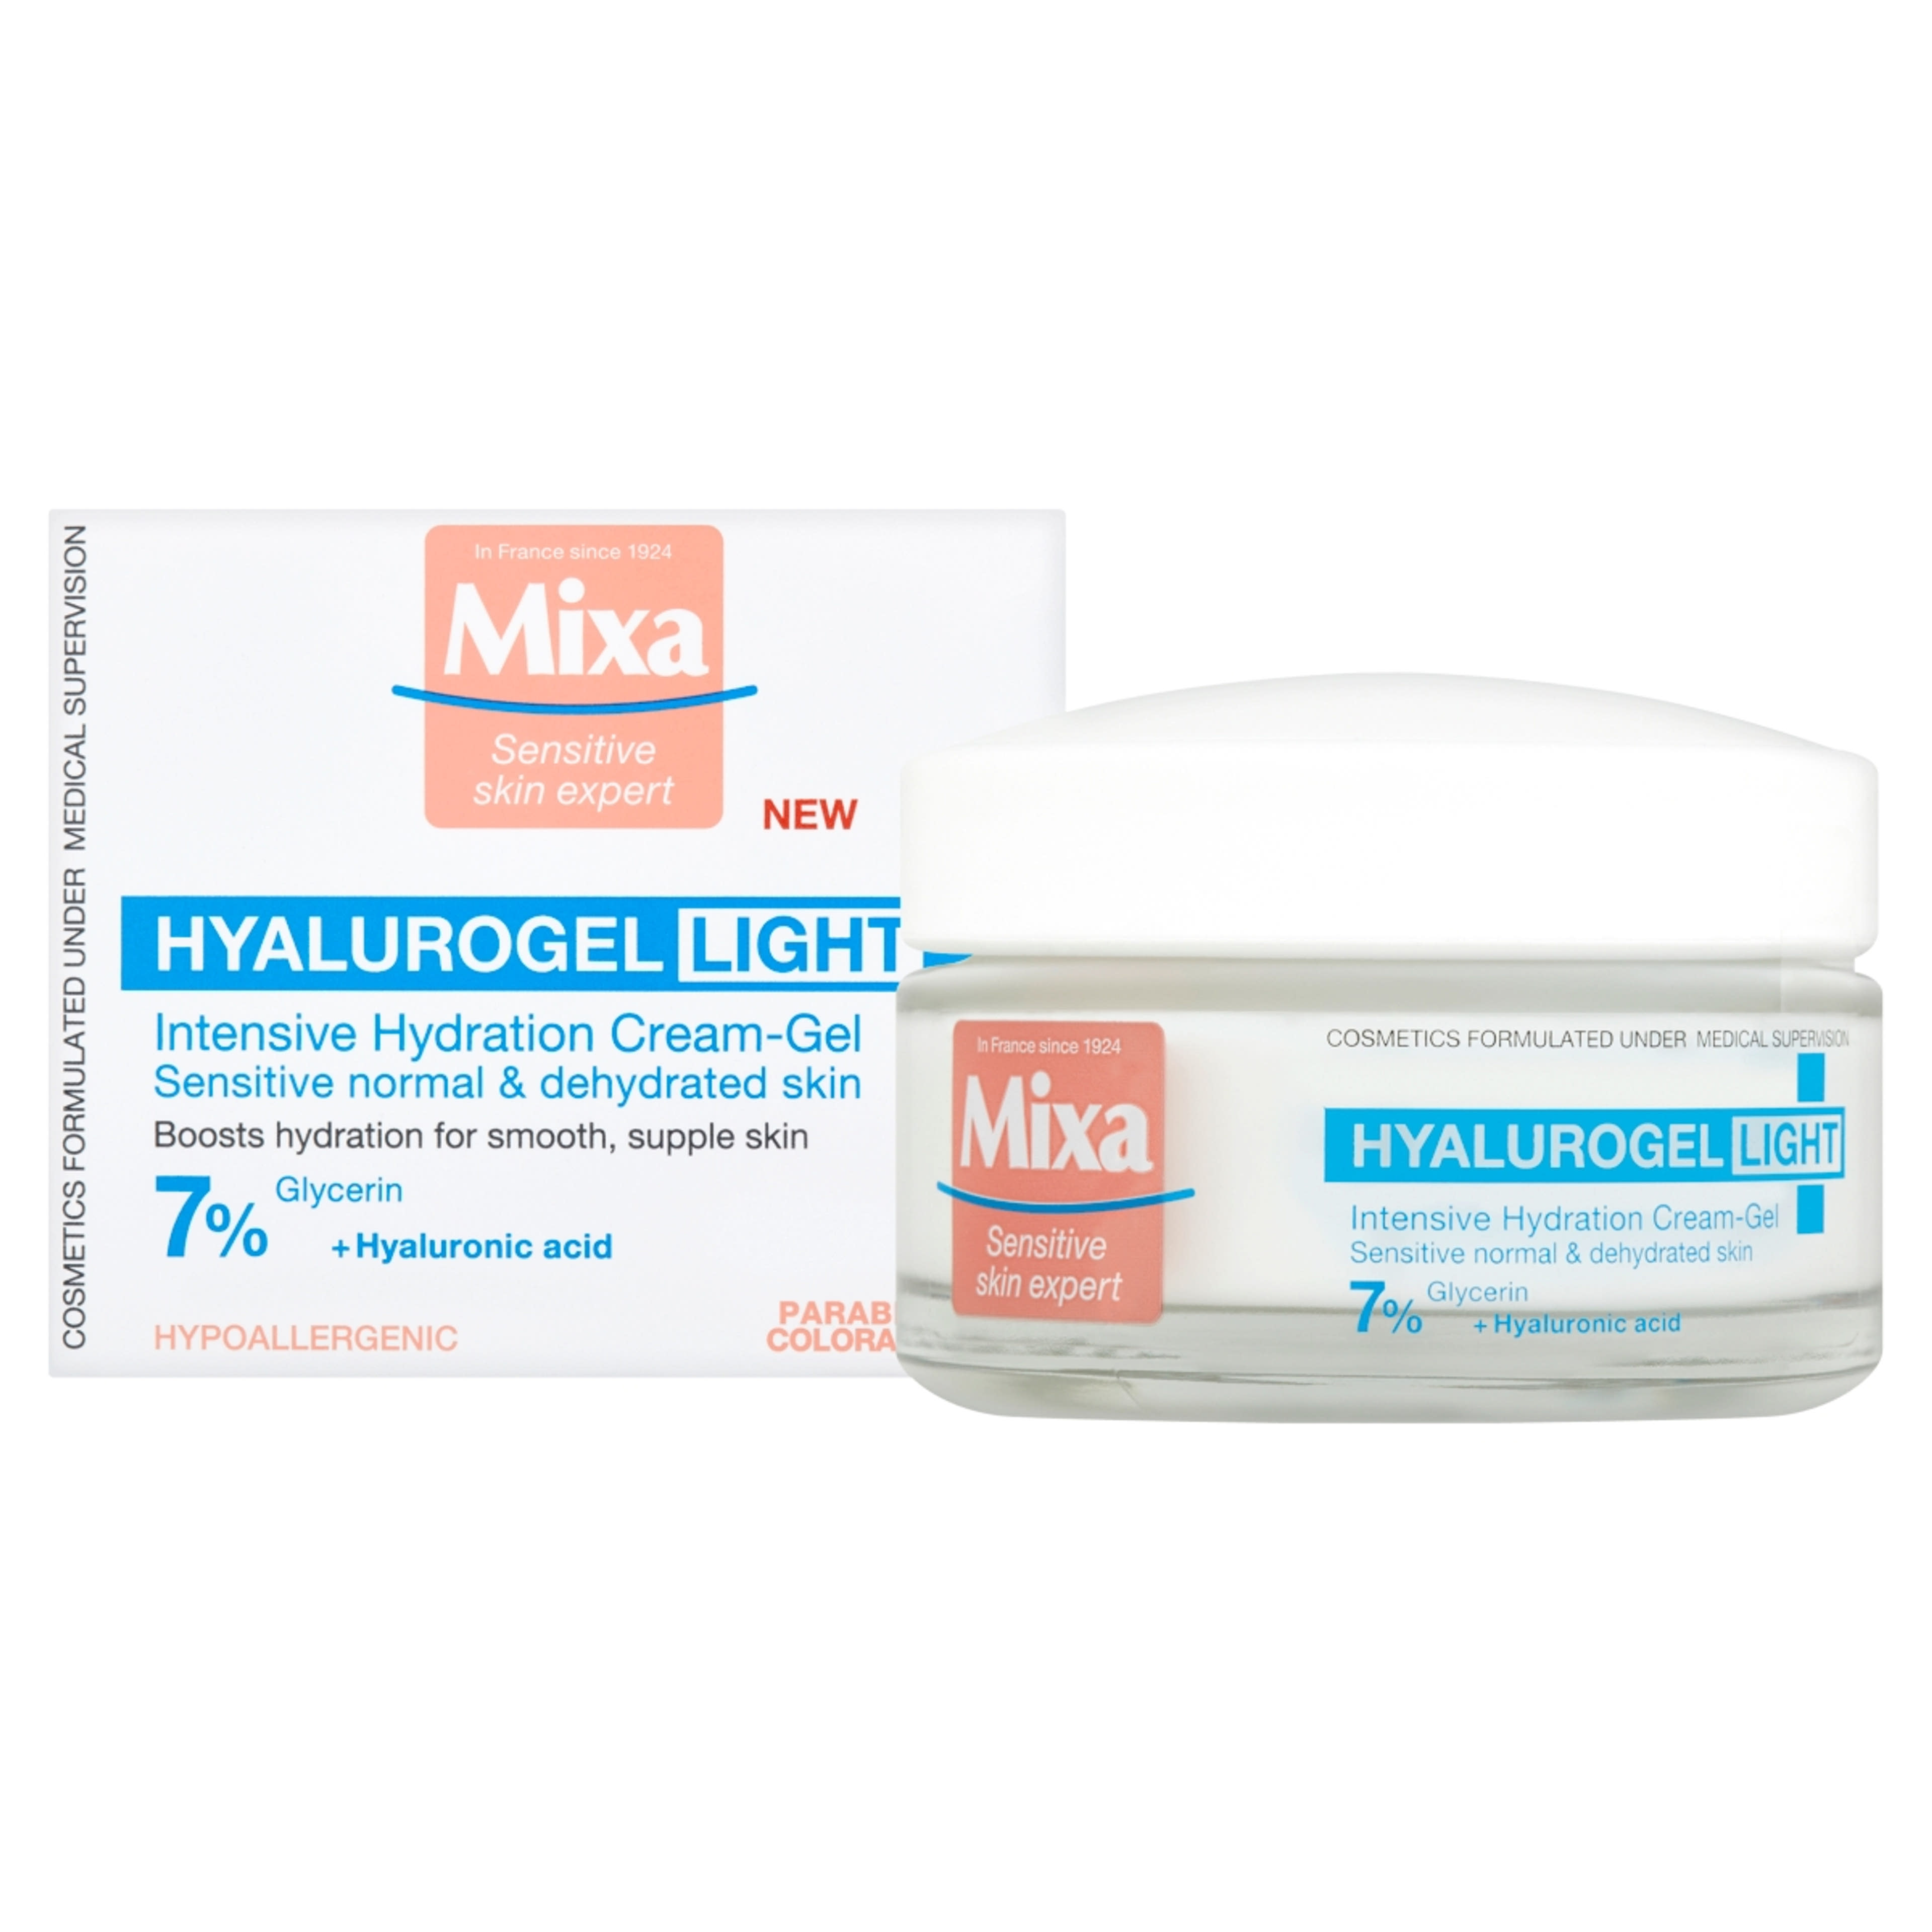 Mixa Hyalurogel intenzív hidratáló krém (7%) érzékeny és dehidratált bőrre - 50 ml-2